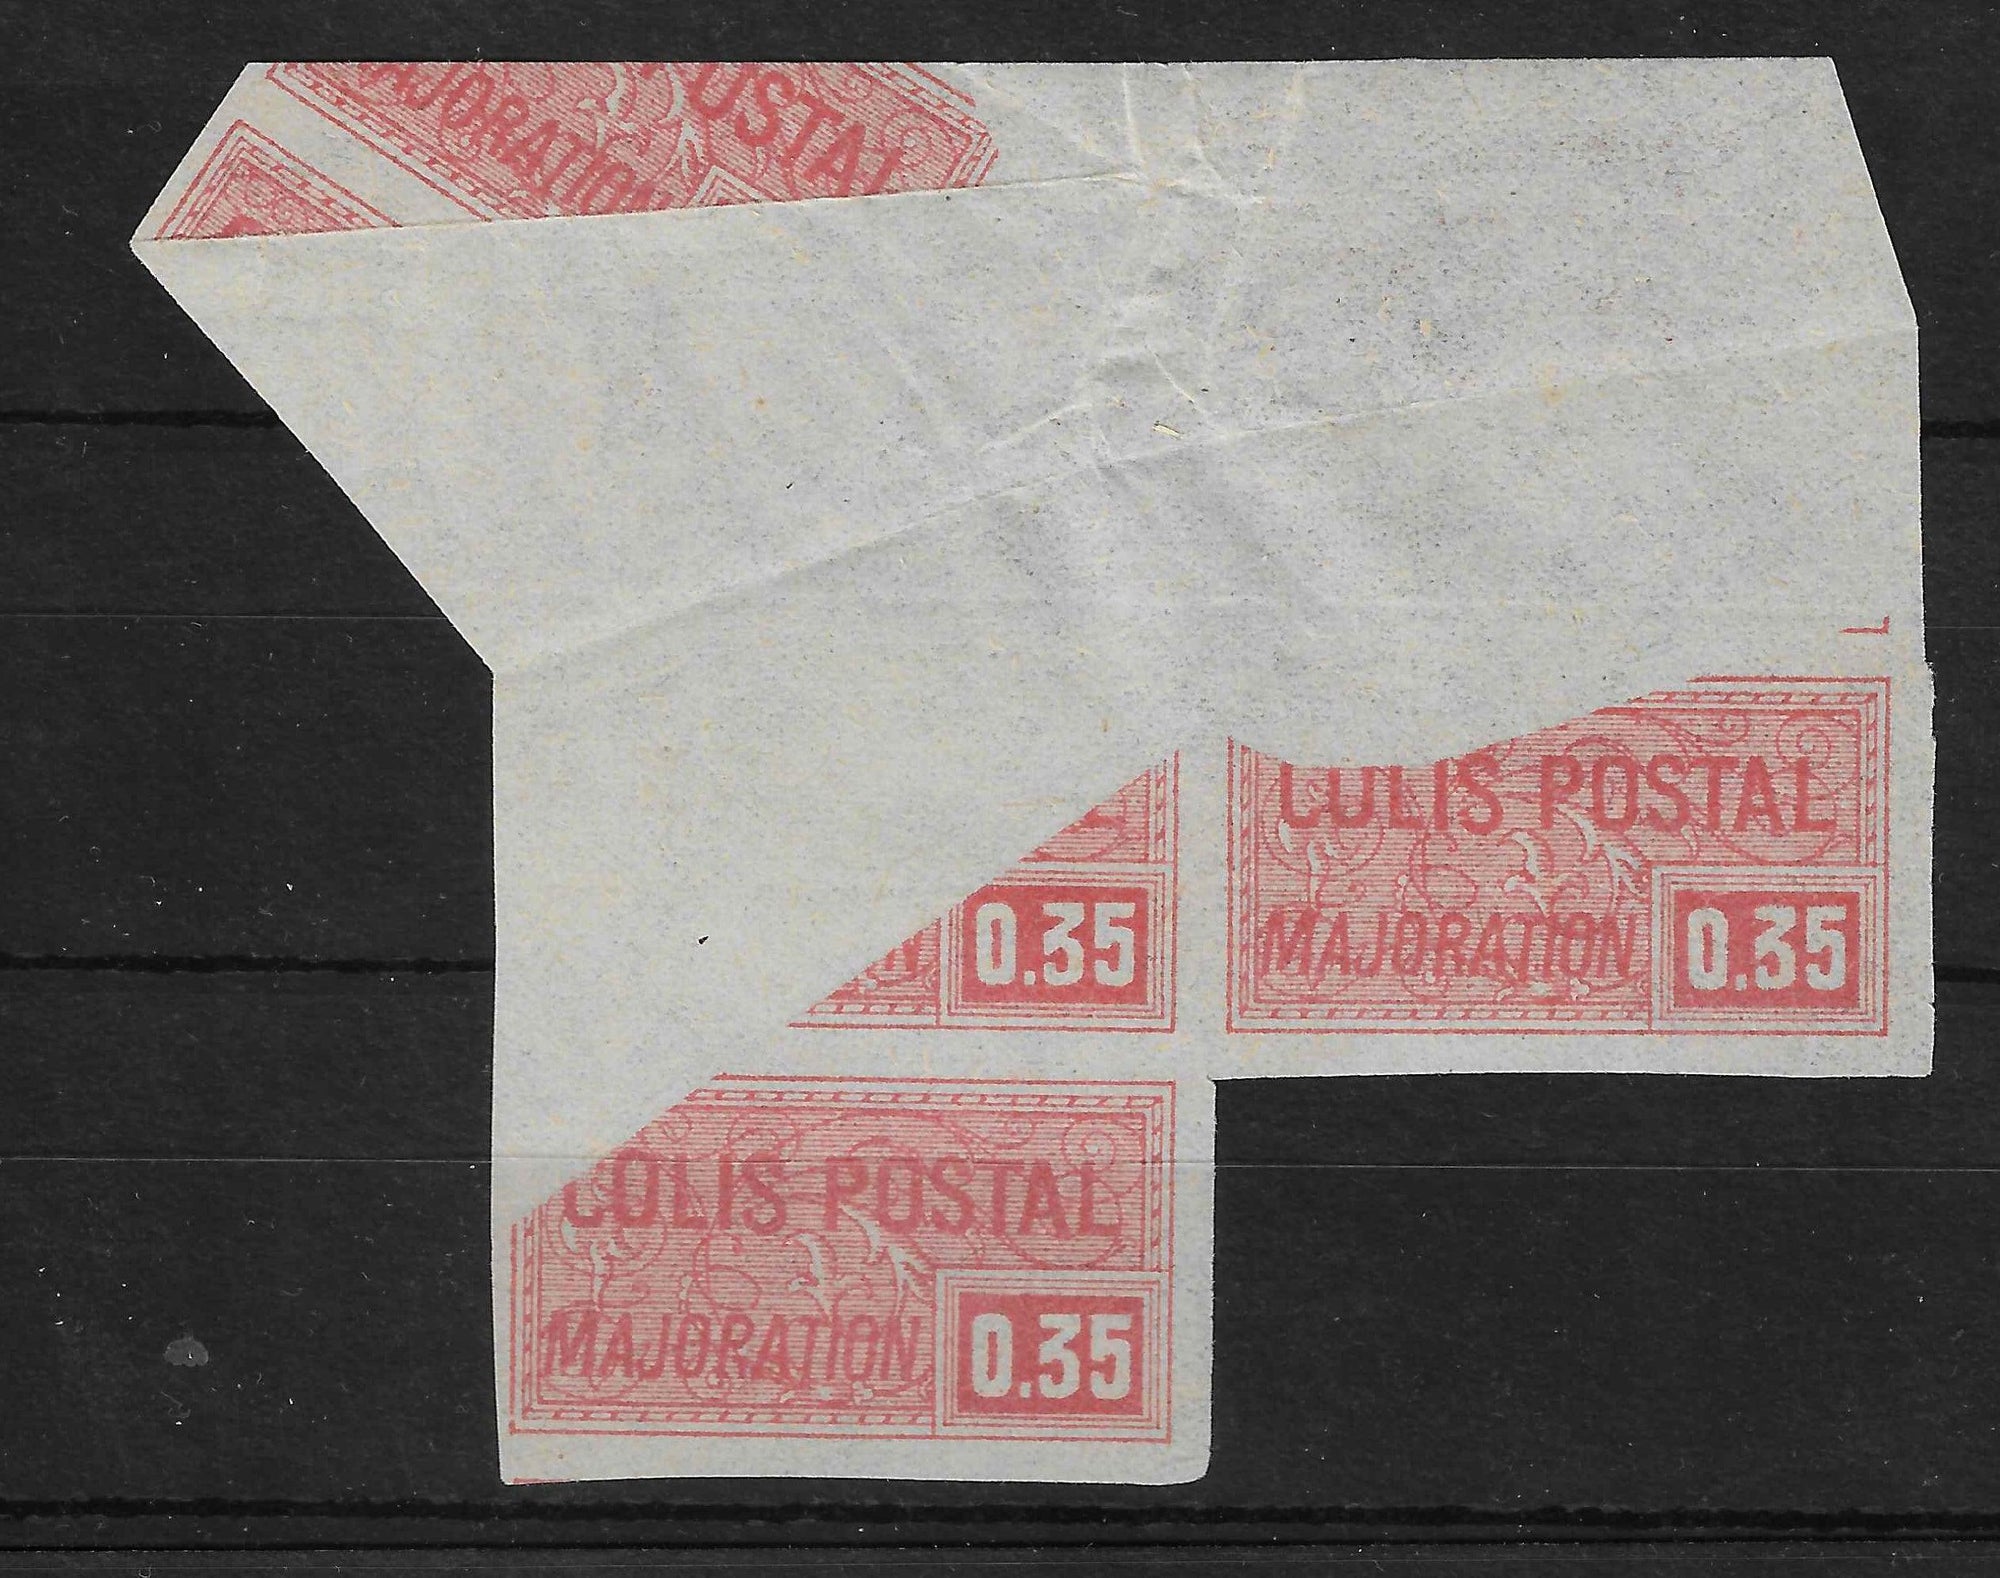 Colis postal n°20a - 35 c. rouge - impression incomplète par pliage - bloc de 3 exemplaires - neufs** - SUP - signé et avec certificat Calves - Calves